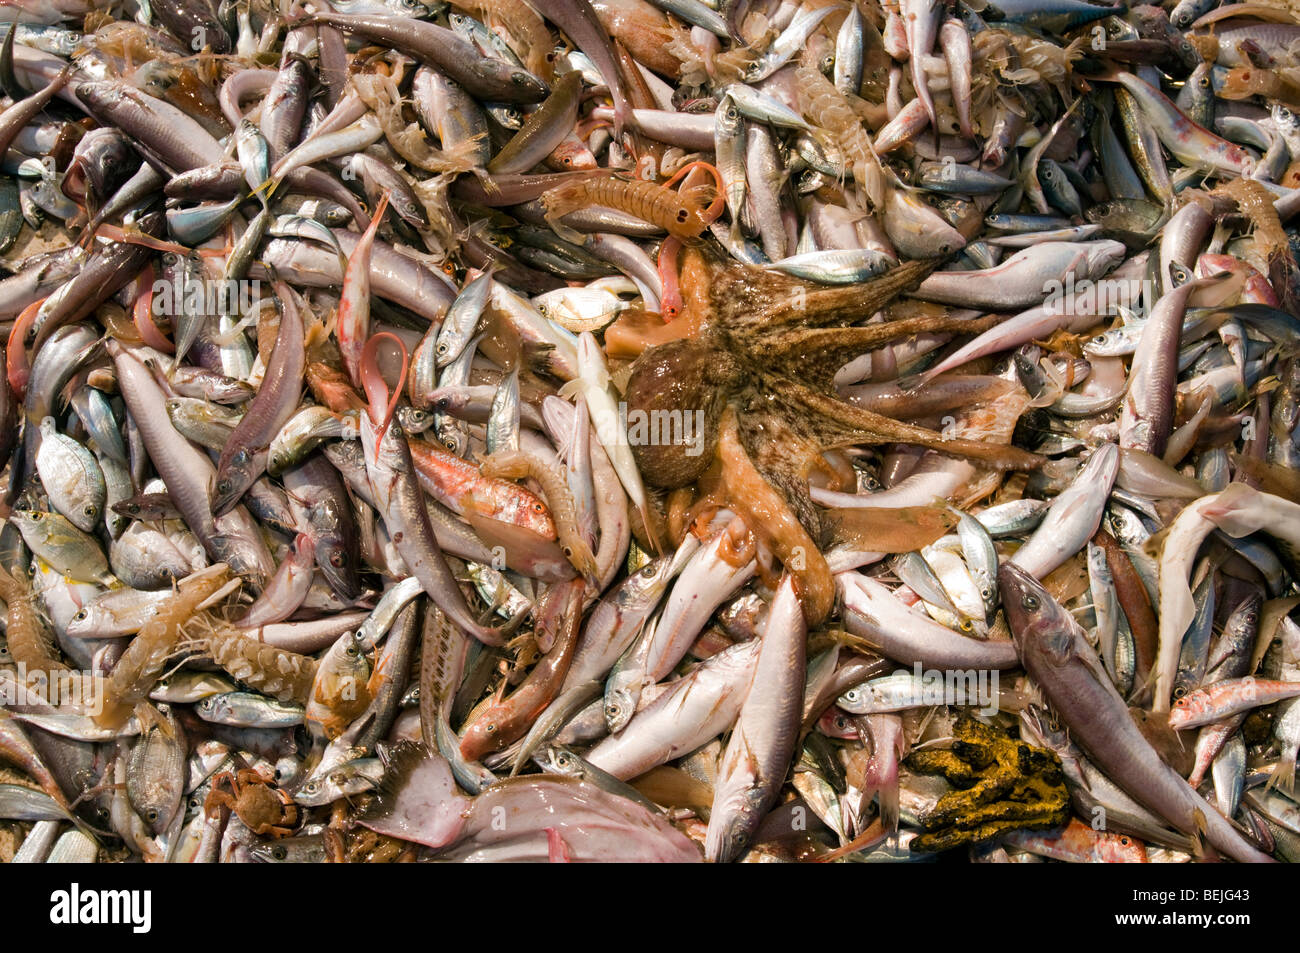 Trawler's catch with by catch species, Aegean Sea Turkey Stock Photo